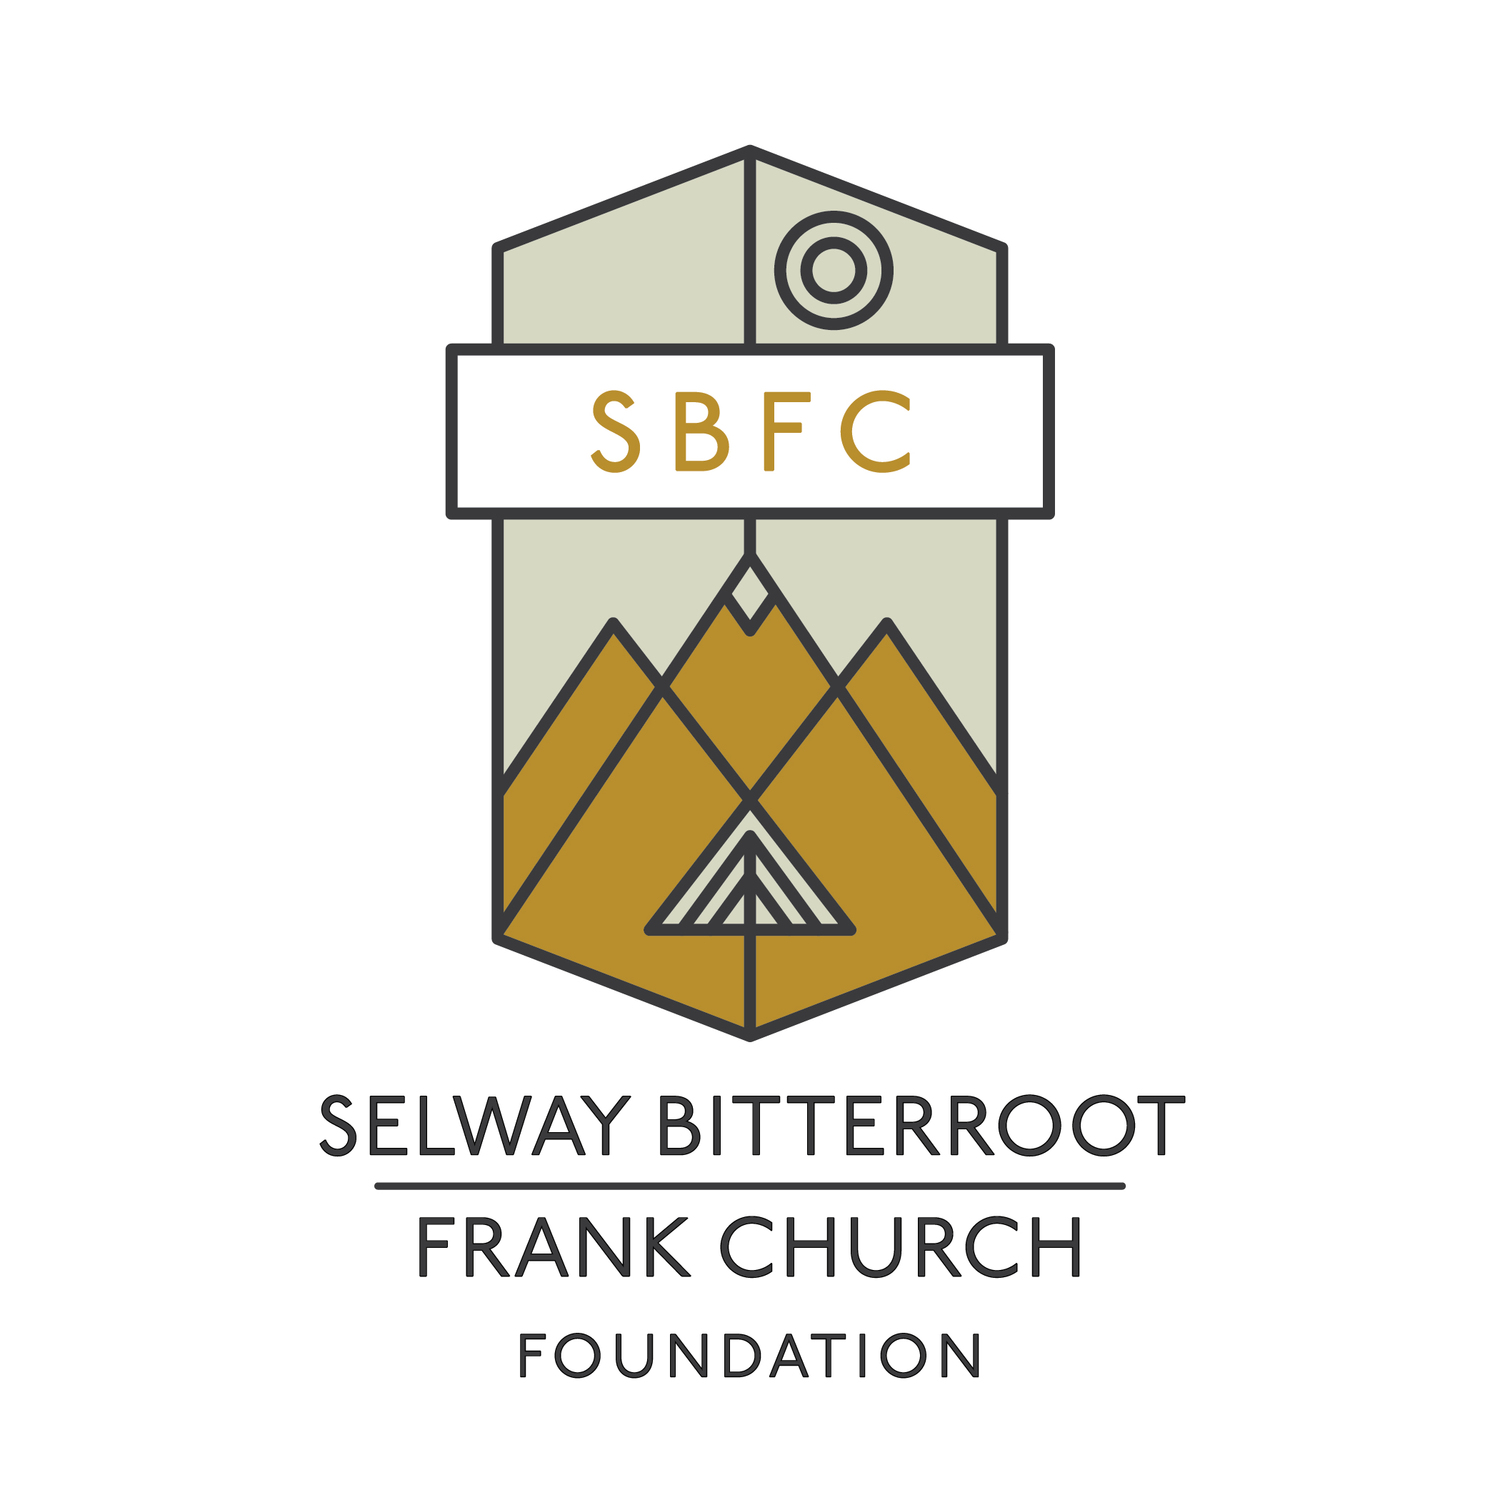 www.selwaybitterroot.org